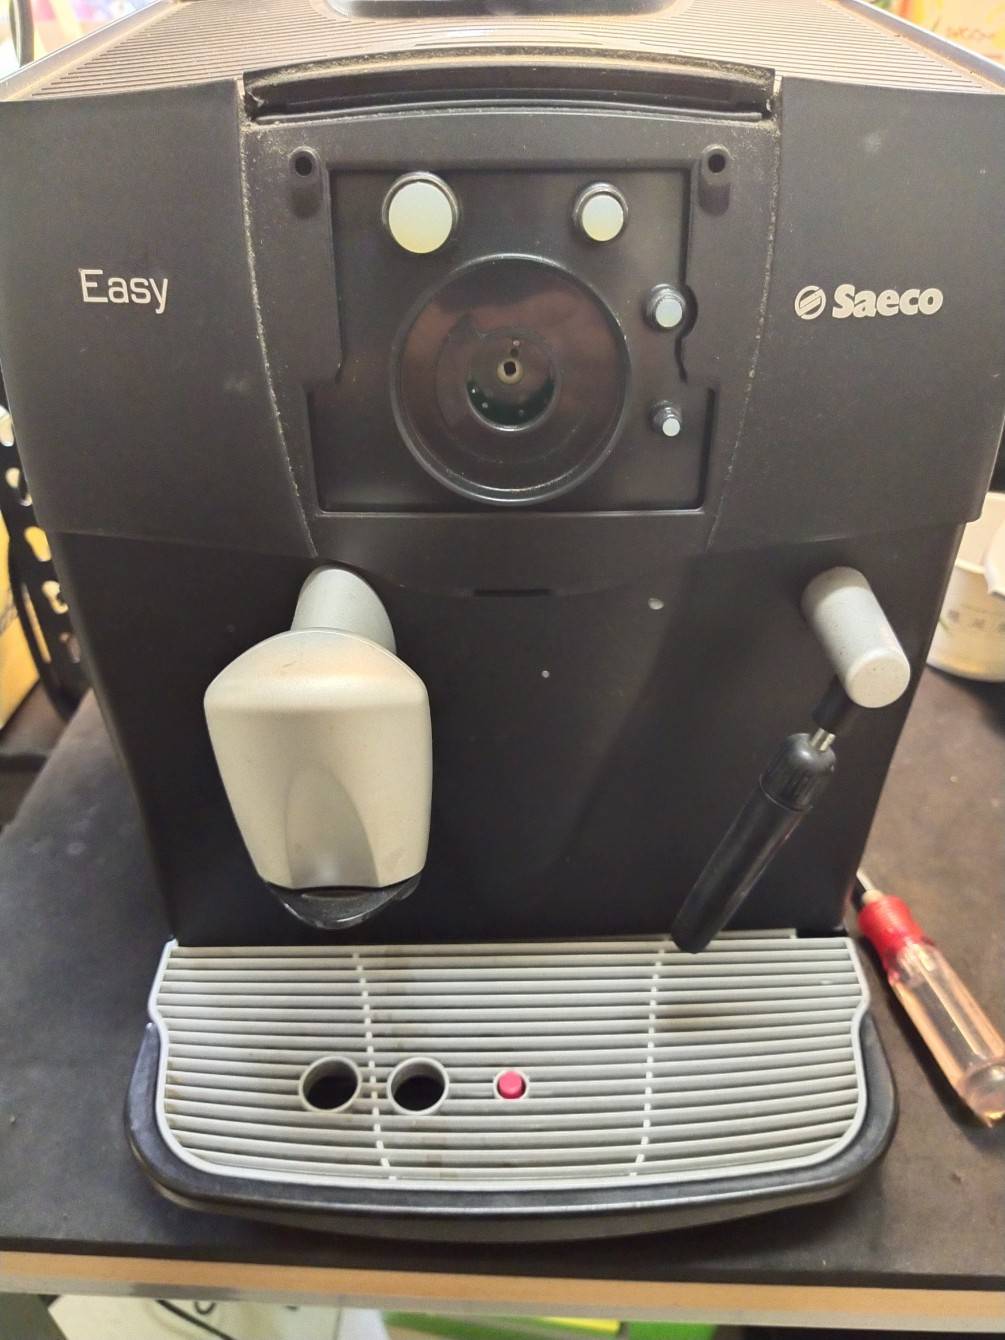 saeco-easy全自動咖啡機.沖泡咖啡有異常.大保養維修處理